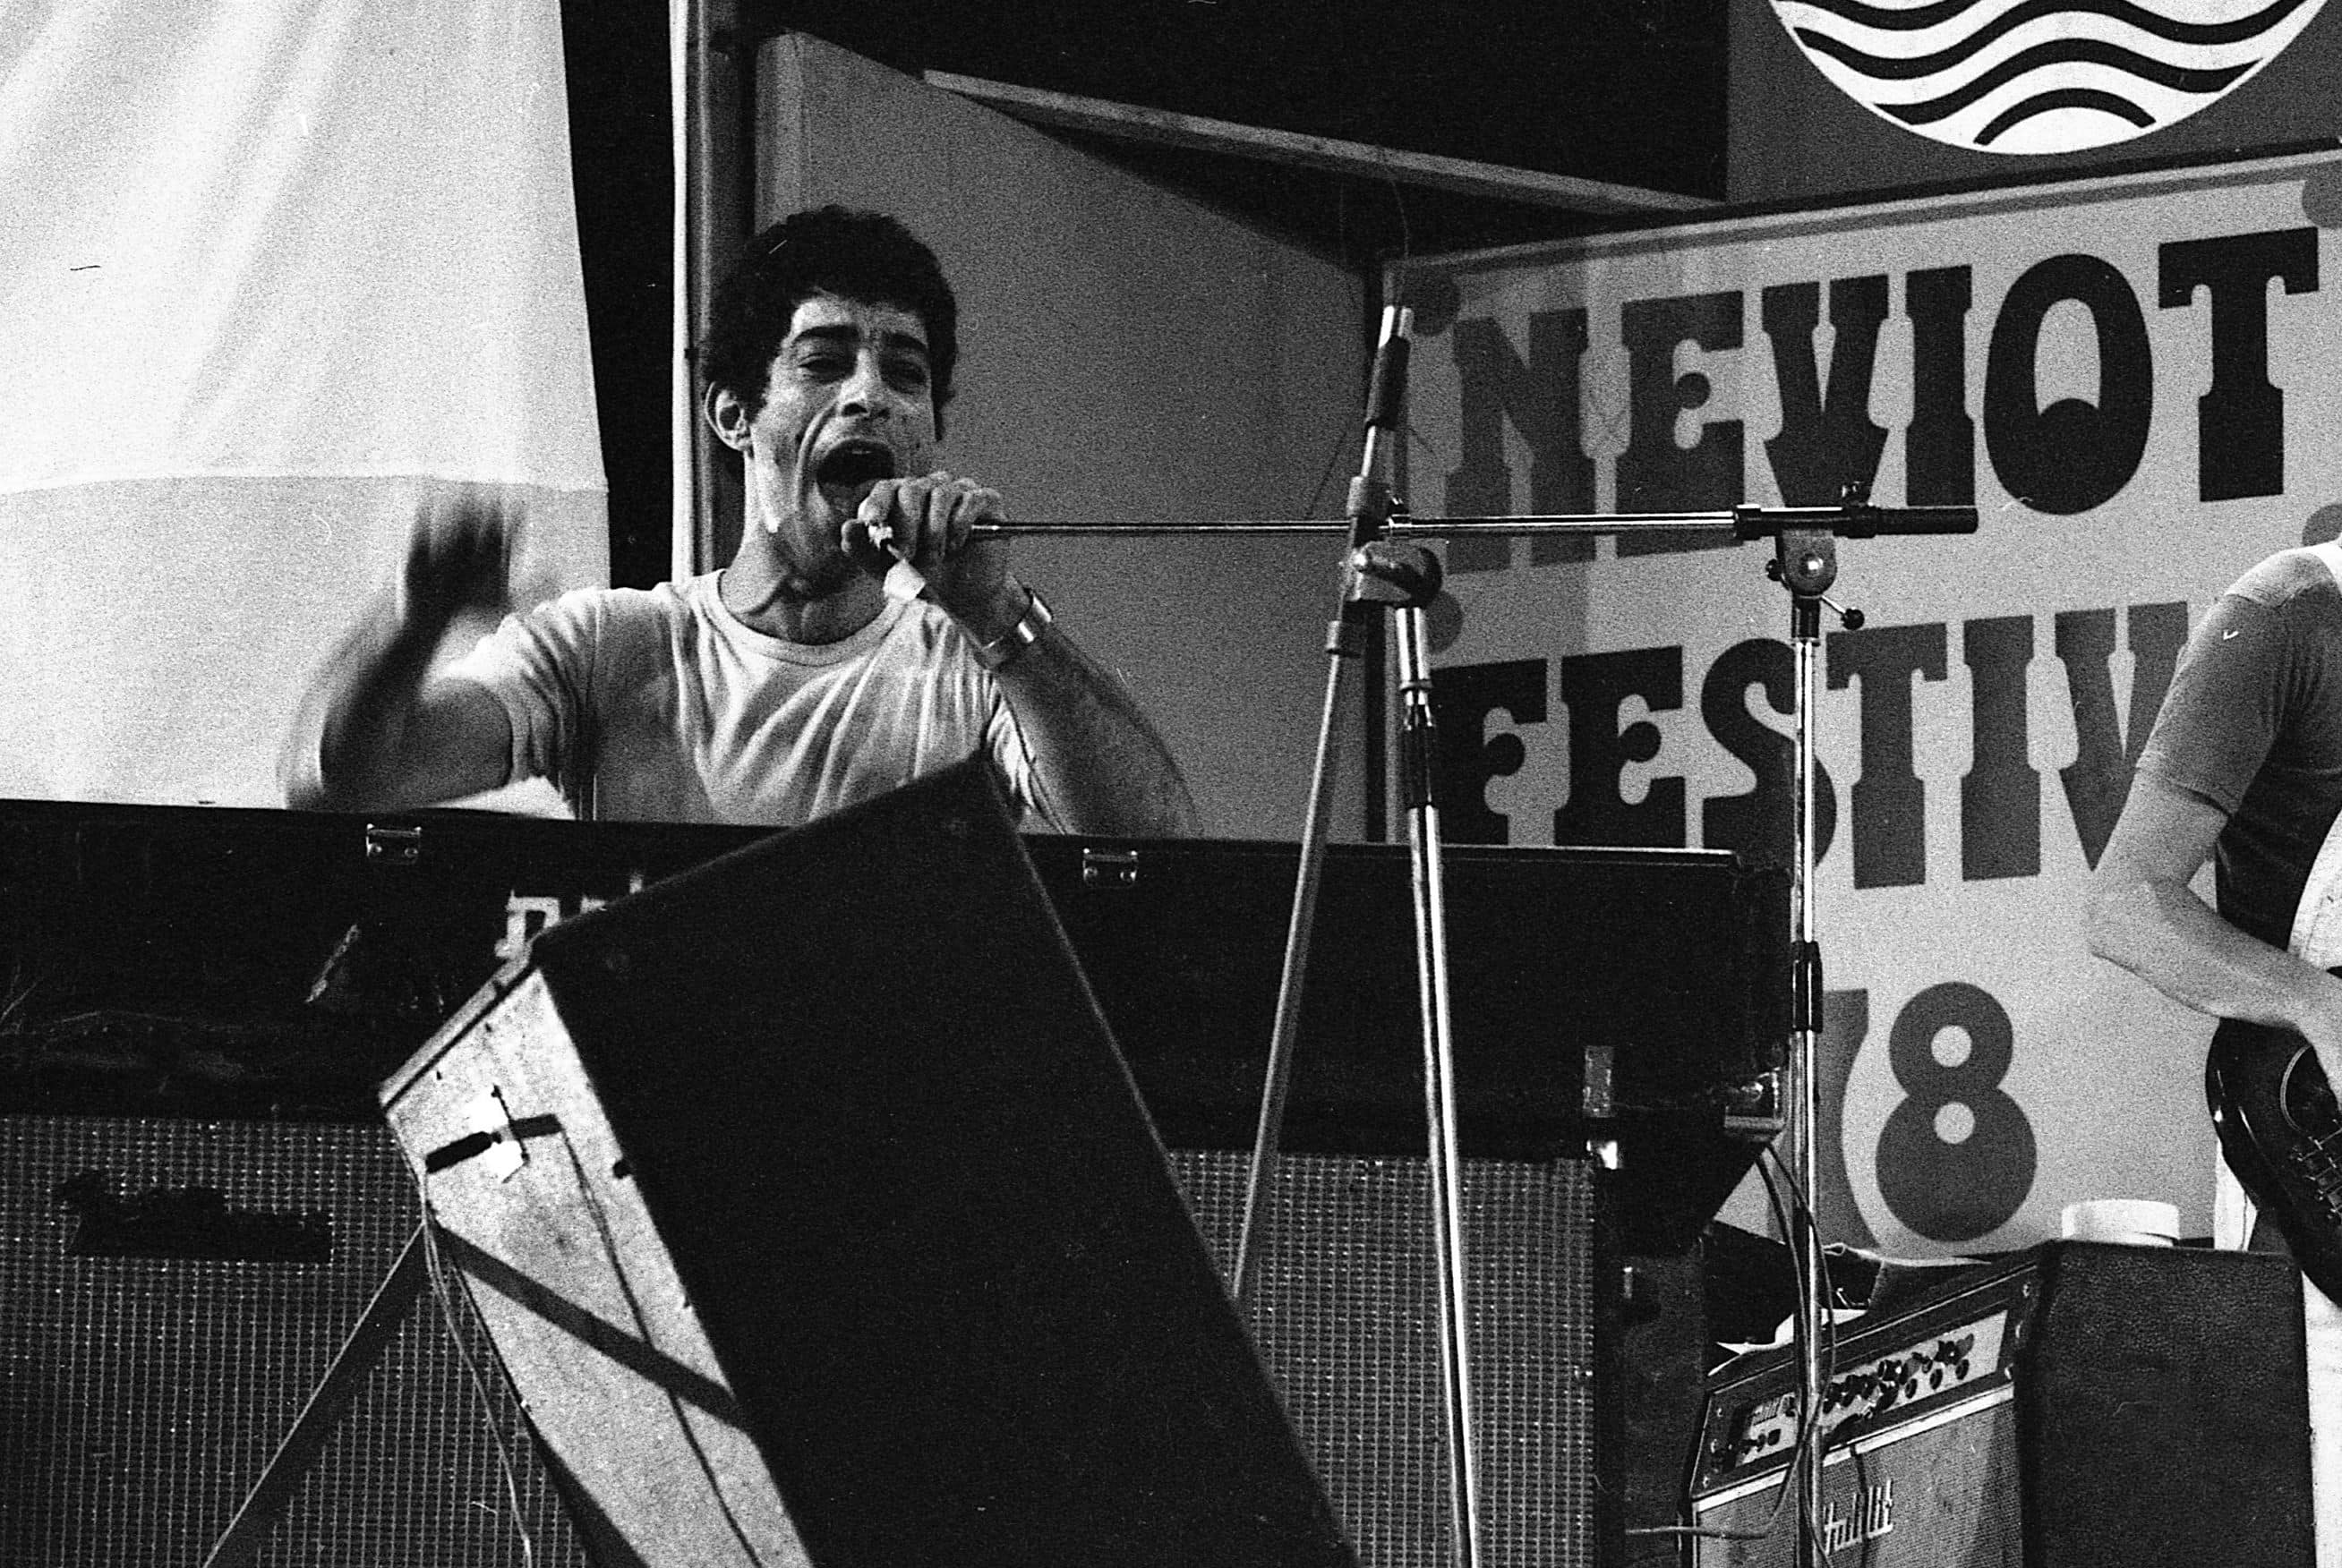 אריאל זילבר בפסטיבל נואיבה ב-1978 (צילום: רועי איסרוב, אוסף דן הדני, הספרייה הלאומית)